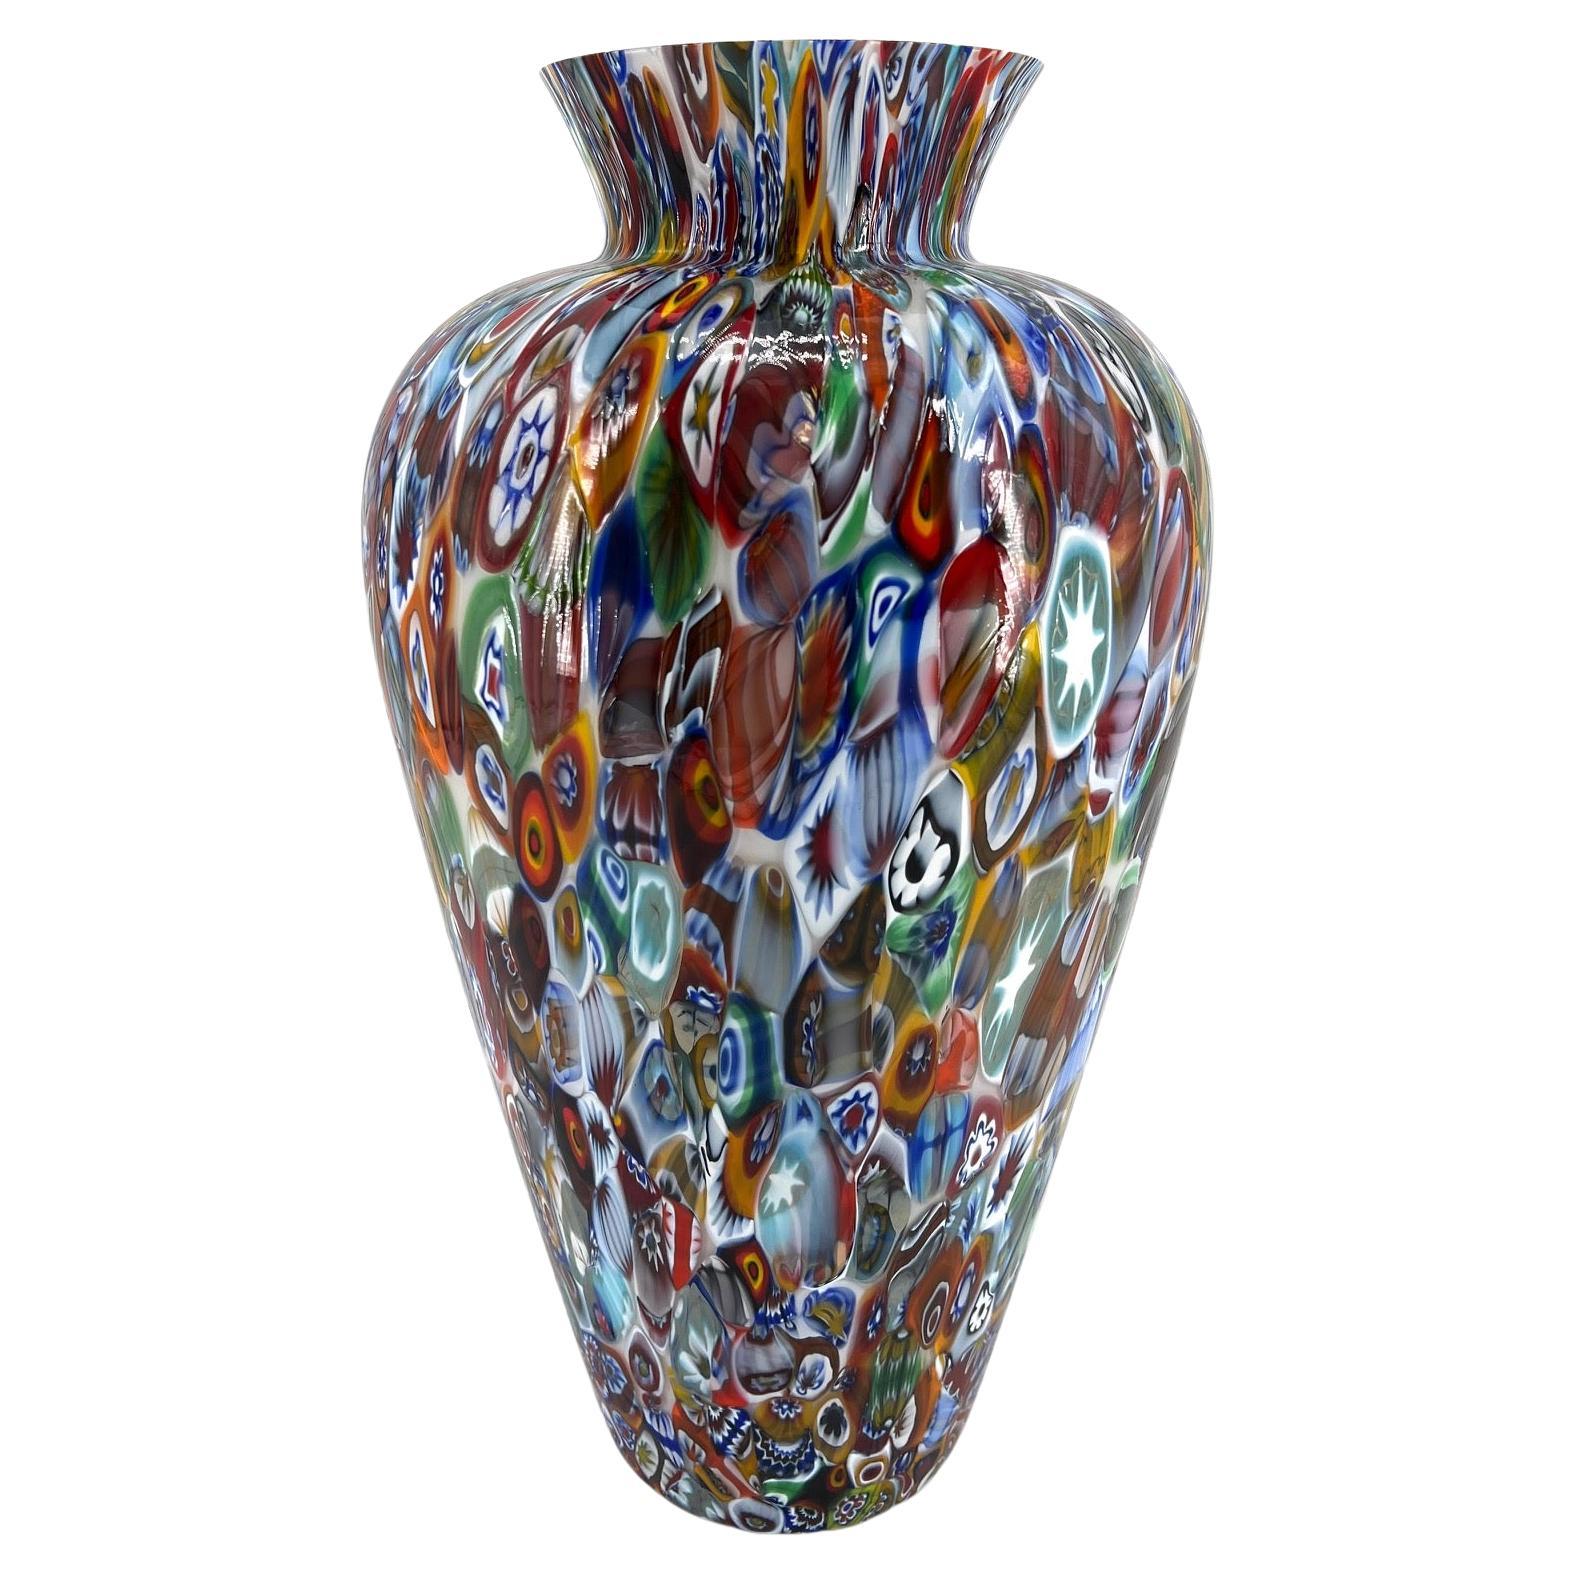 1295 Murano Hand Made Glass Millefiori Murrine Vase Big Size Height 18, 5 Inches